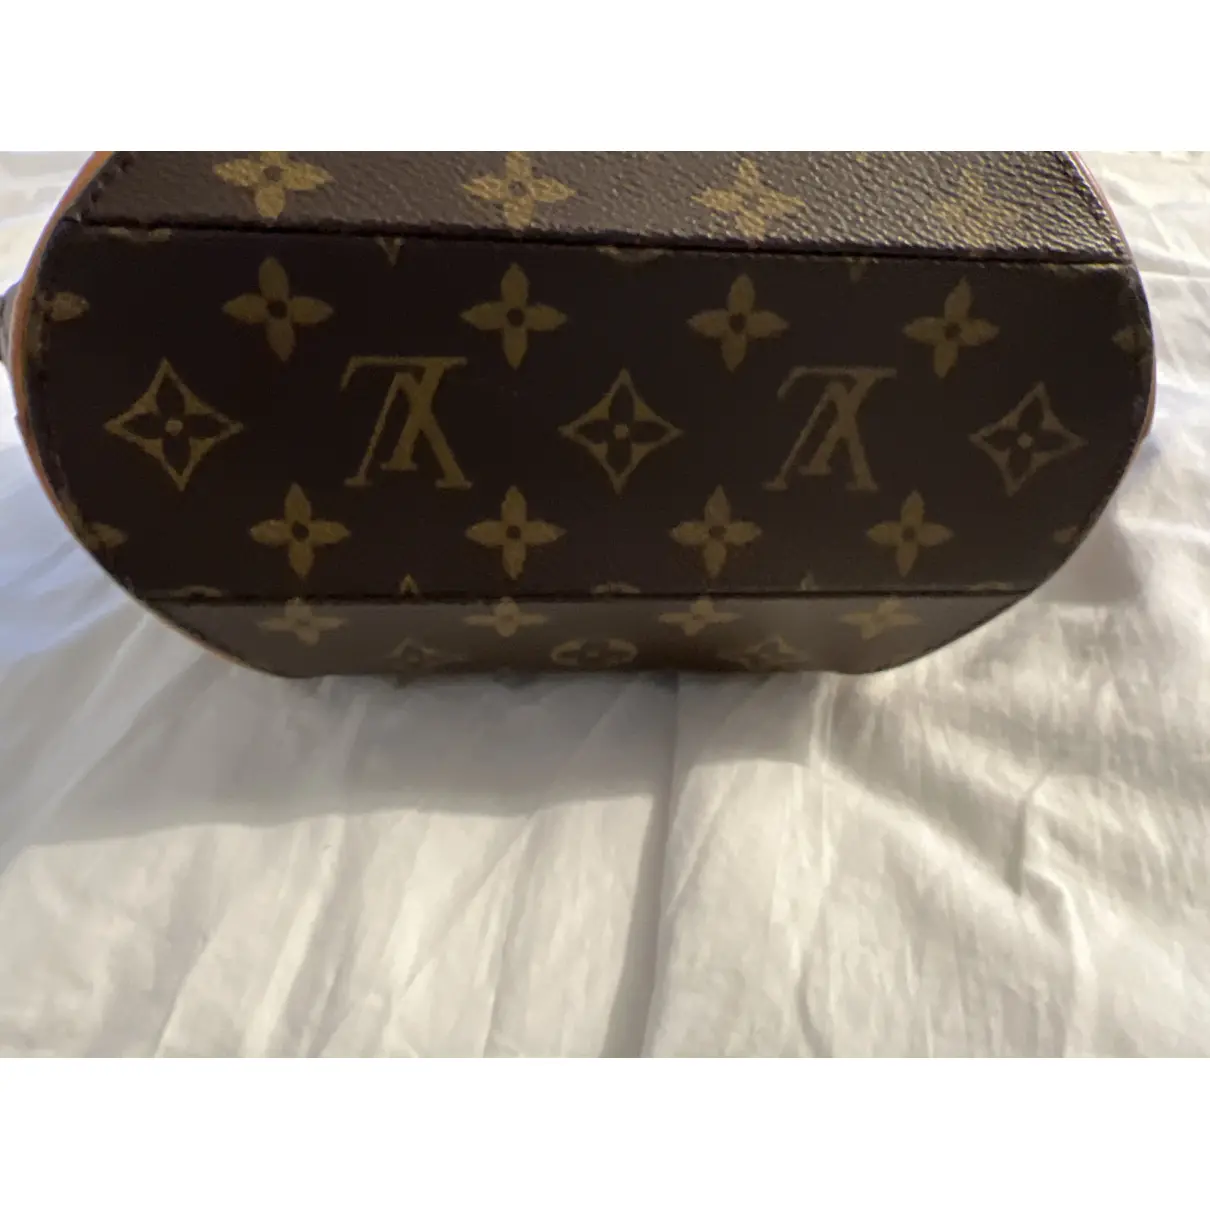 Ellipse leather handbag Louis Vuitton - Vintage